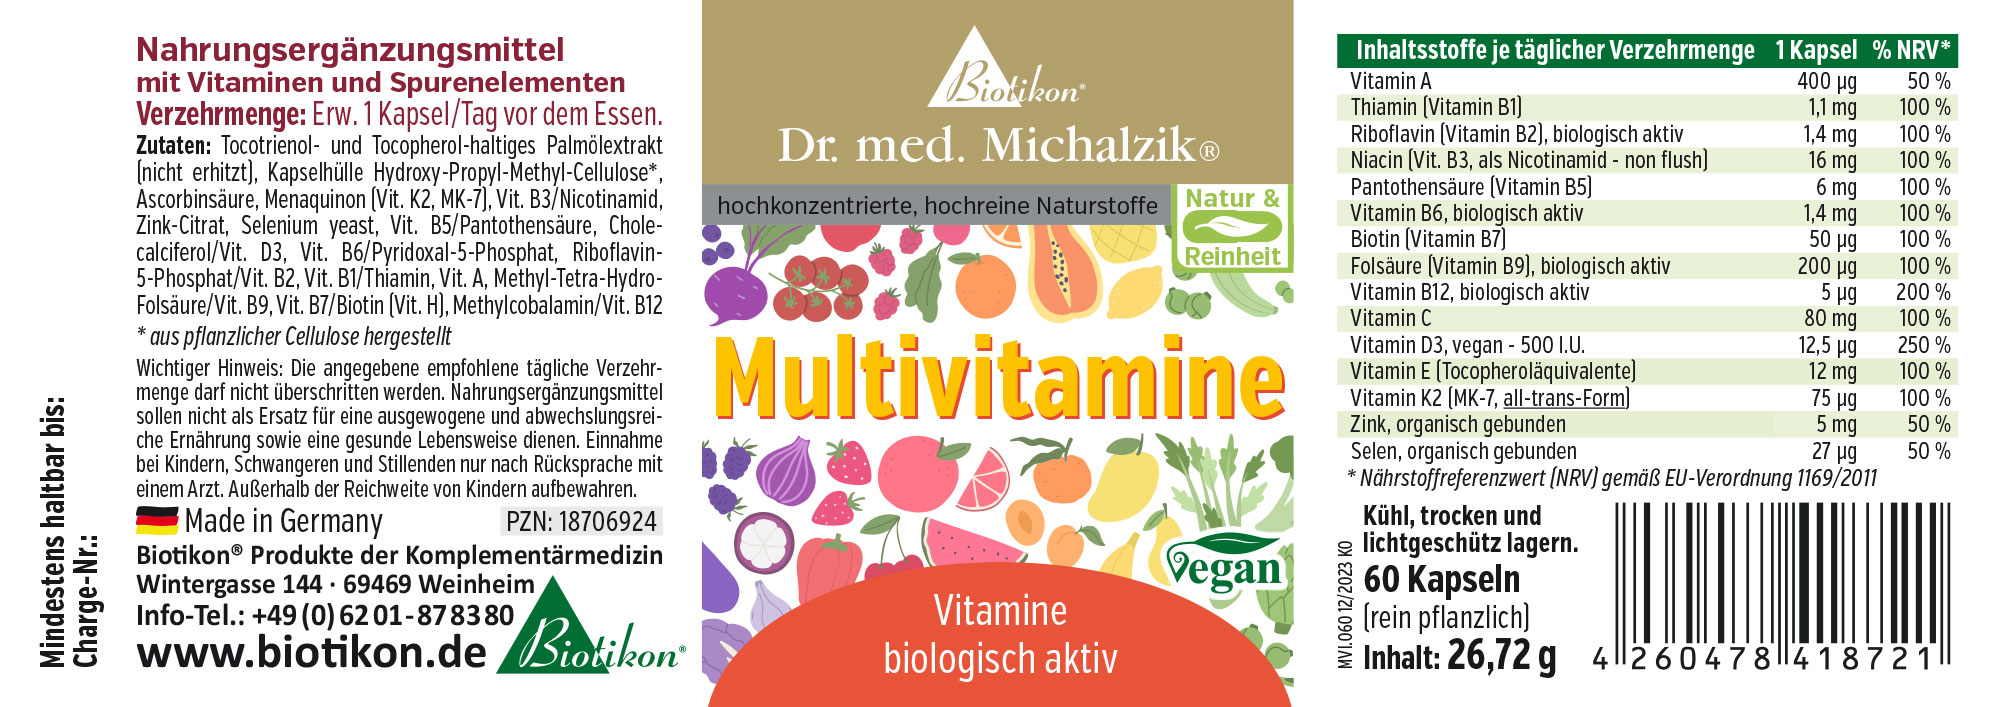 Multivitamine nach Dr. med. Michalzik